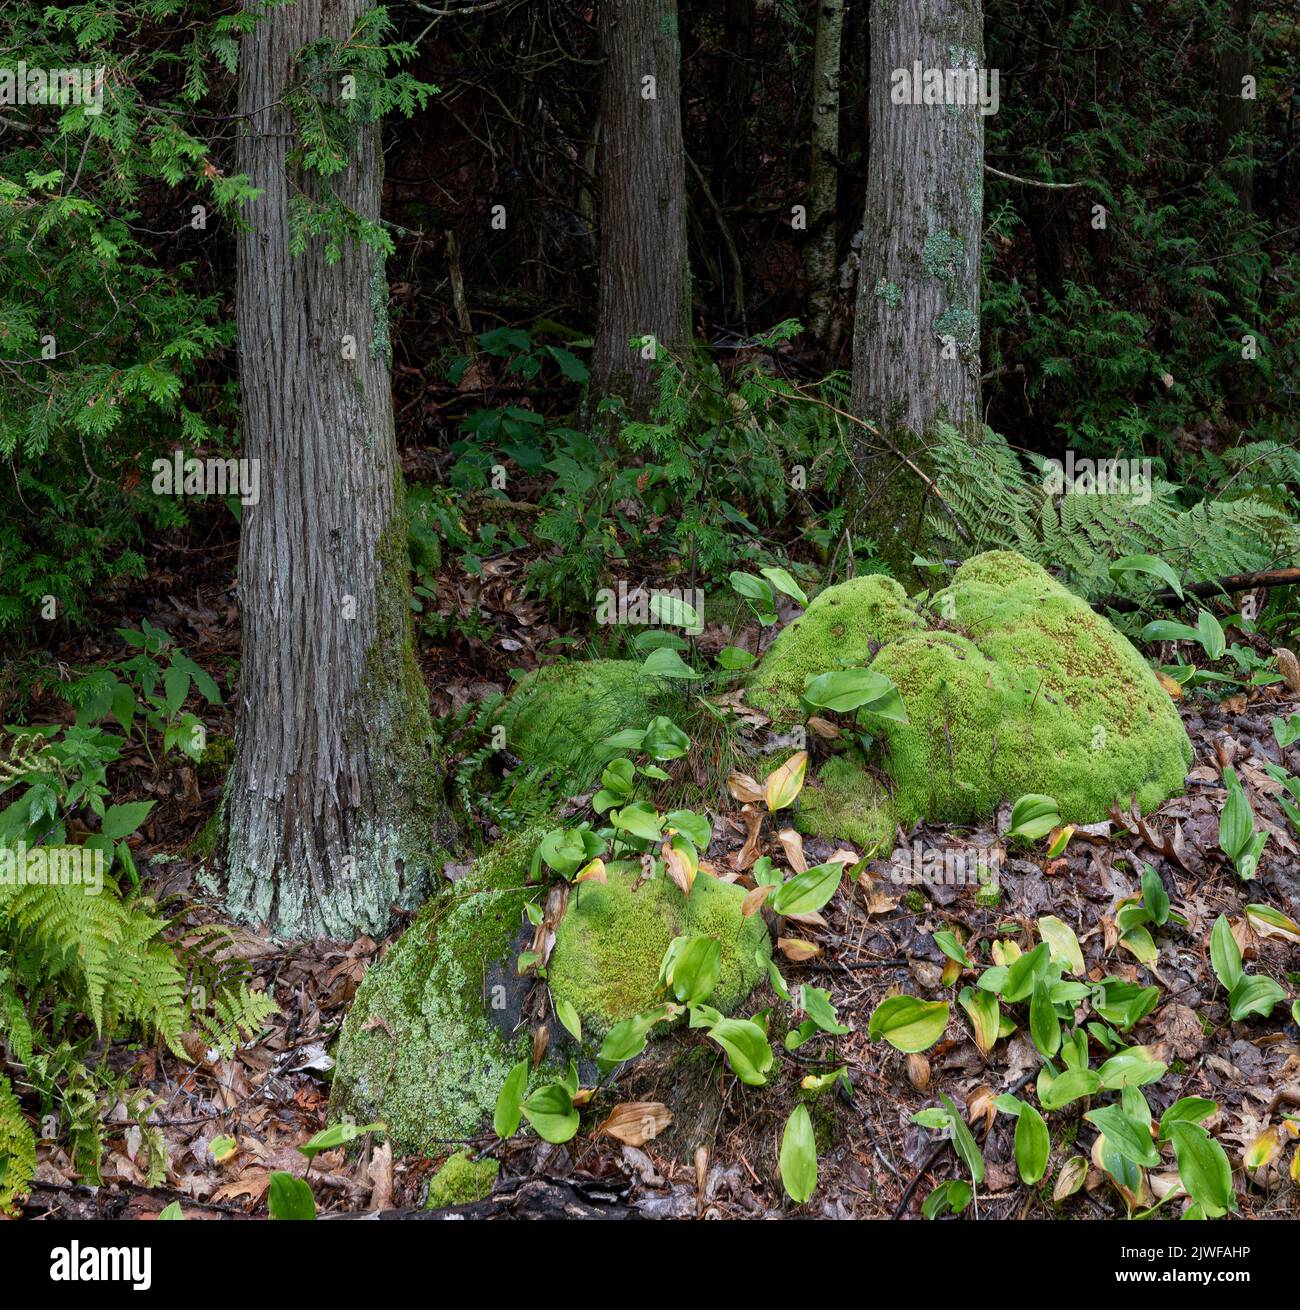 Mousses de coussins, Canada mayflower, fougères et cèdre blanc du nord dans une ancienne forêt sur une île de l'archipel des Pâques de 30 000 îles Banque D'Images